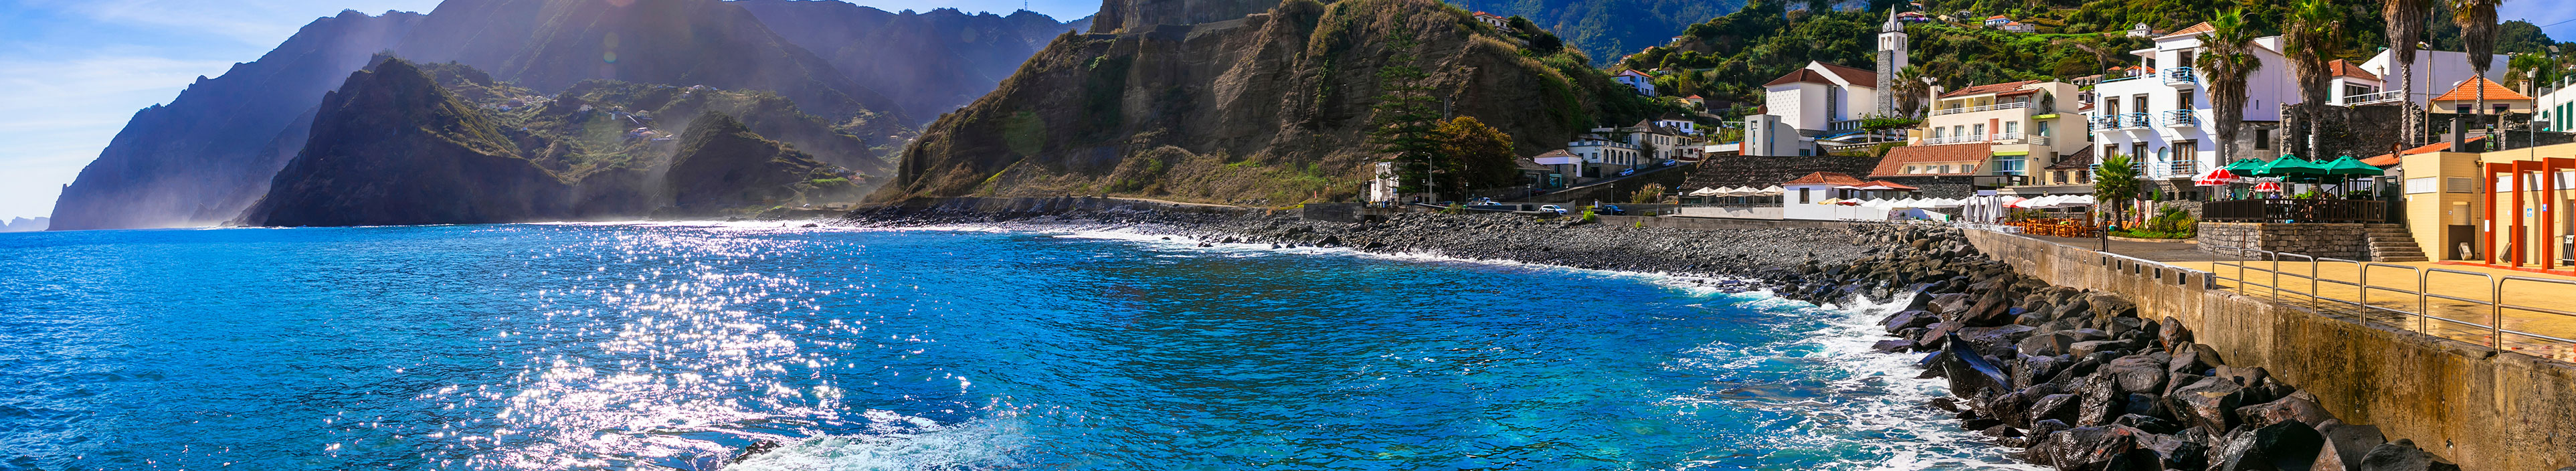 Naturlandschaft der Insel Madeira, Blick auf das charmante Dorf Porto da Cruz. Beliebter Urlaubsort in Portugal